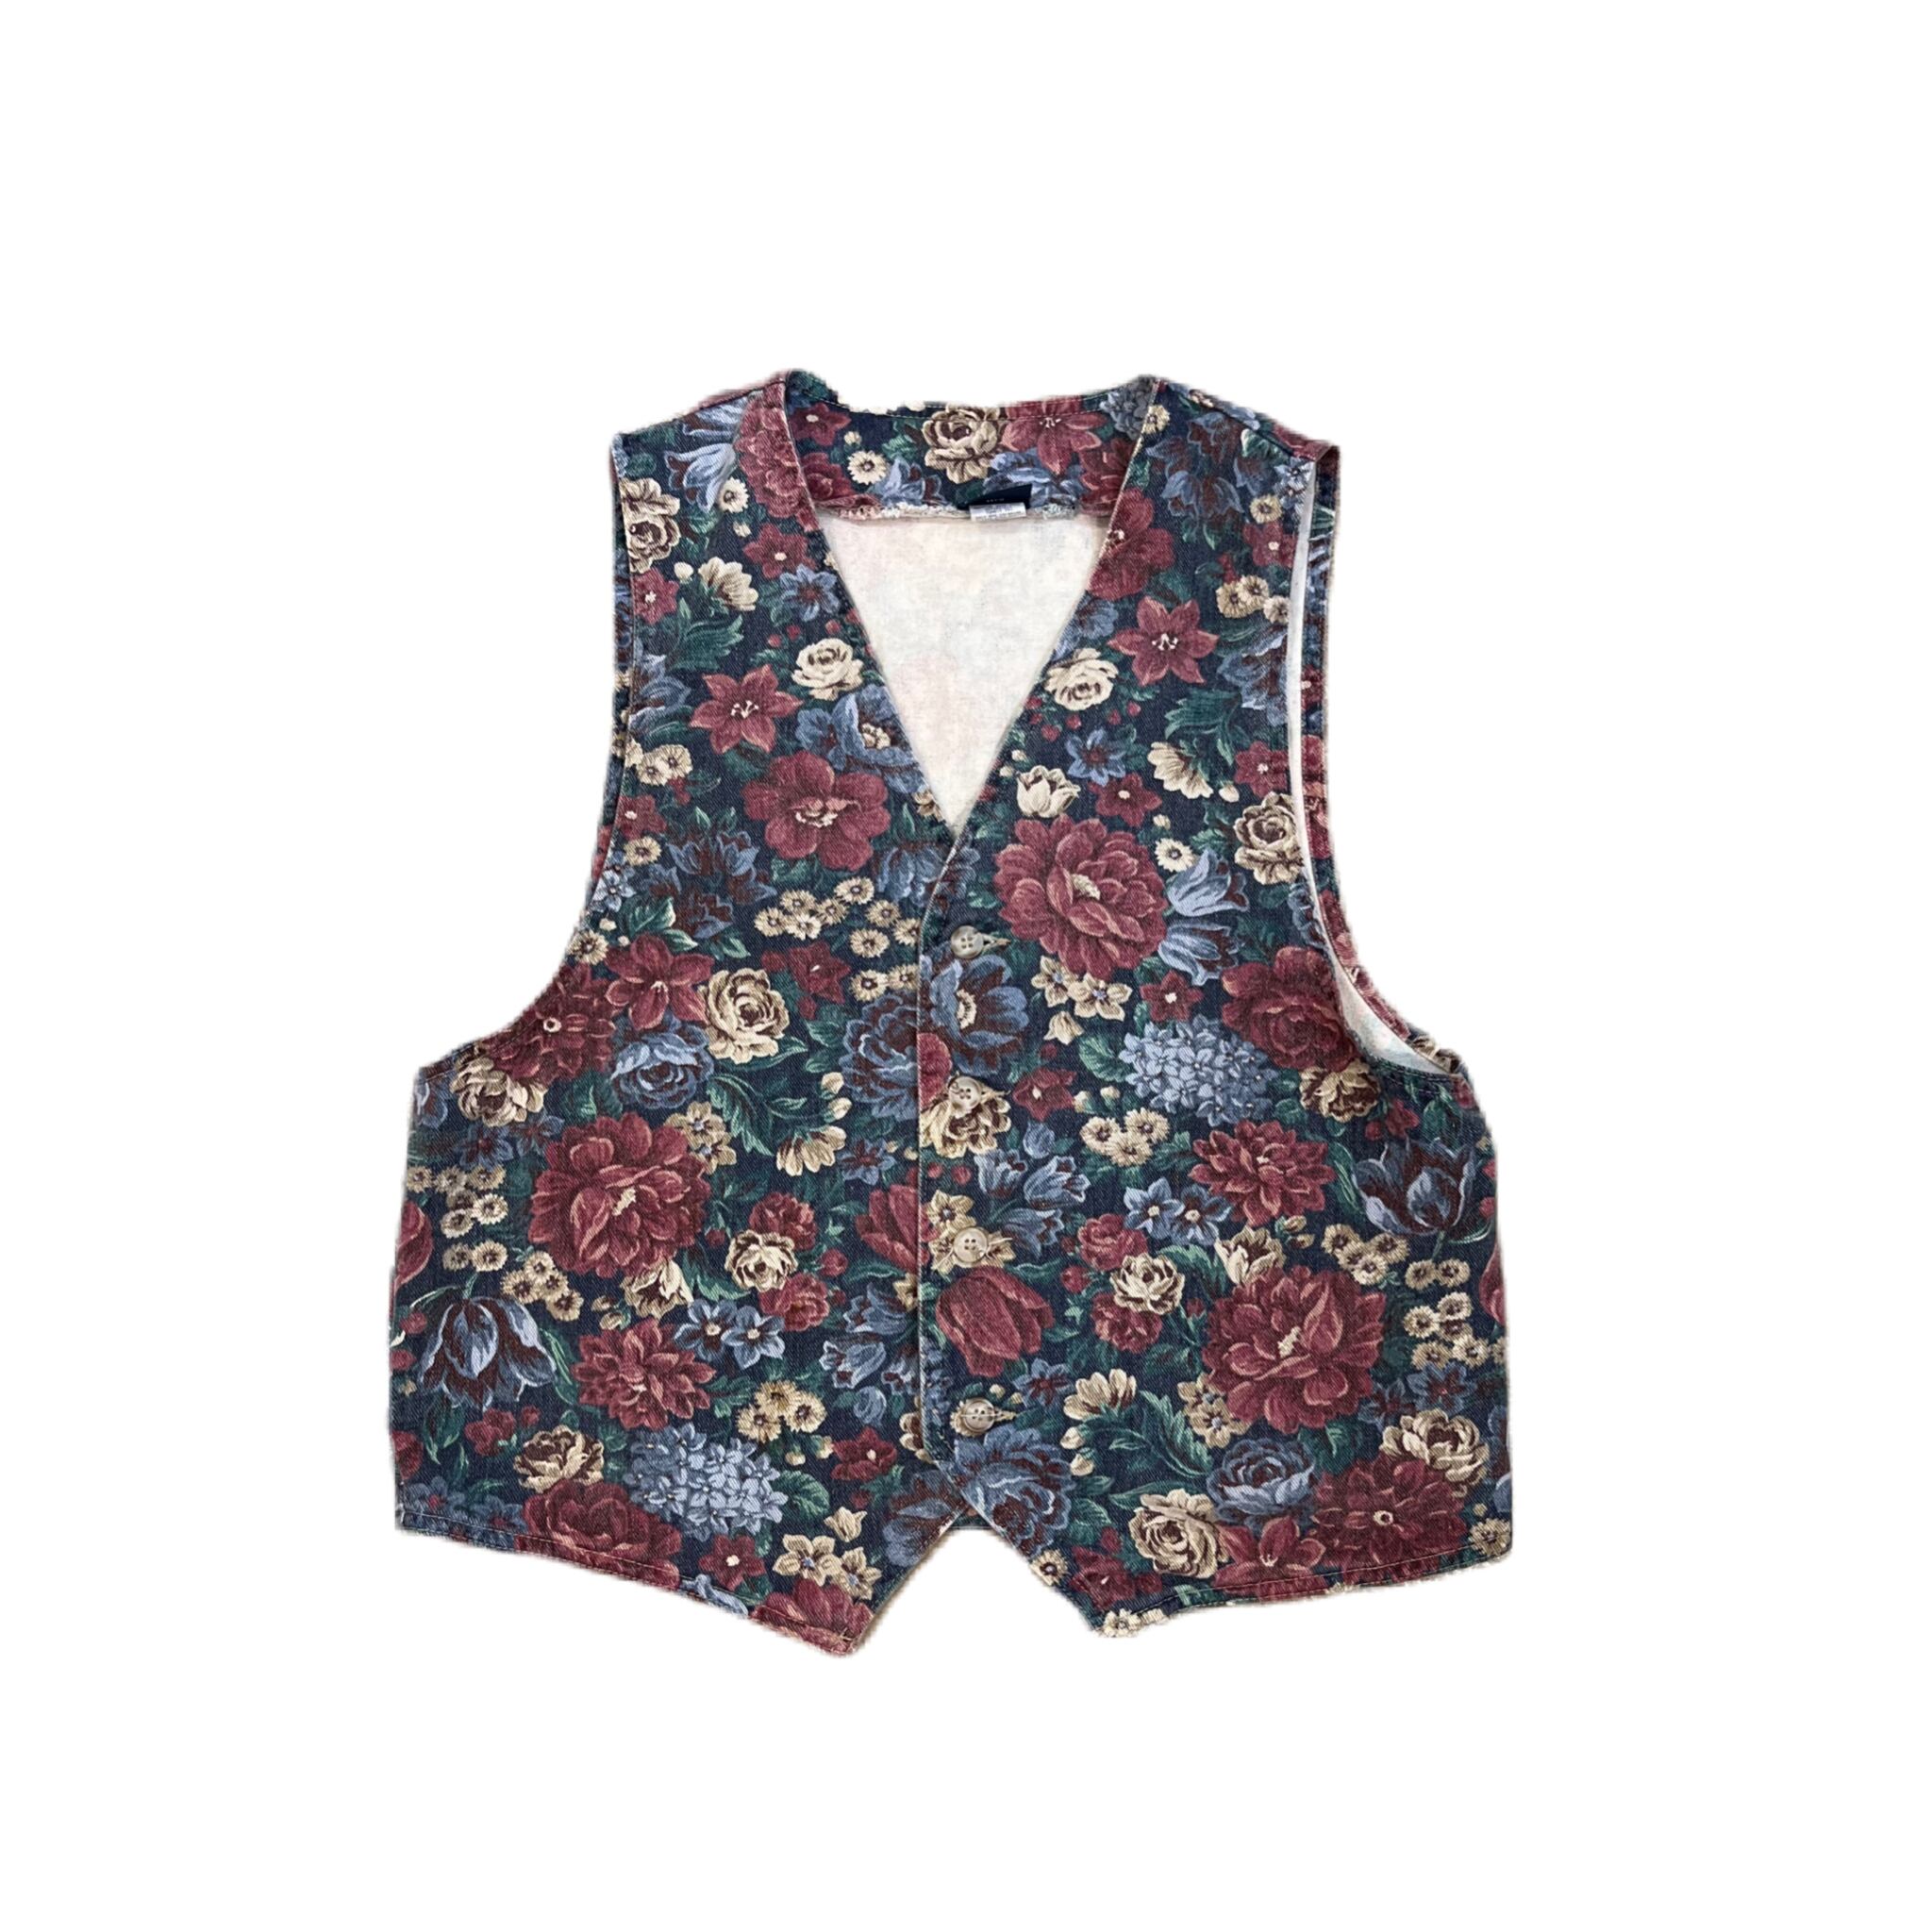 Flower vest